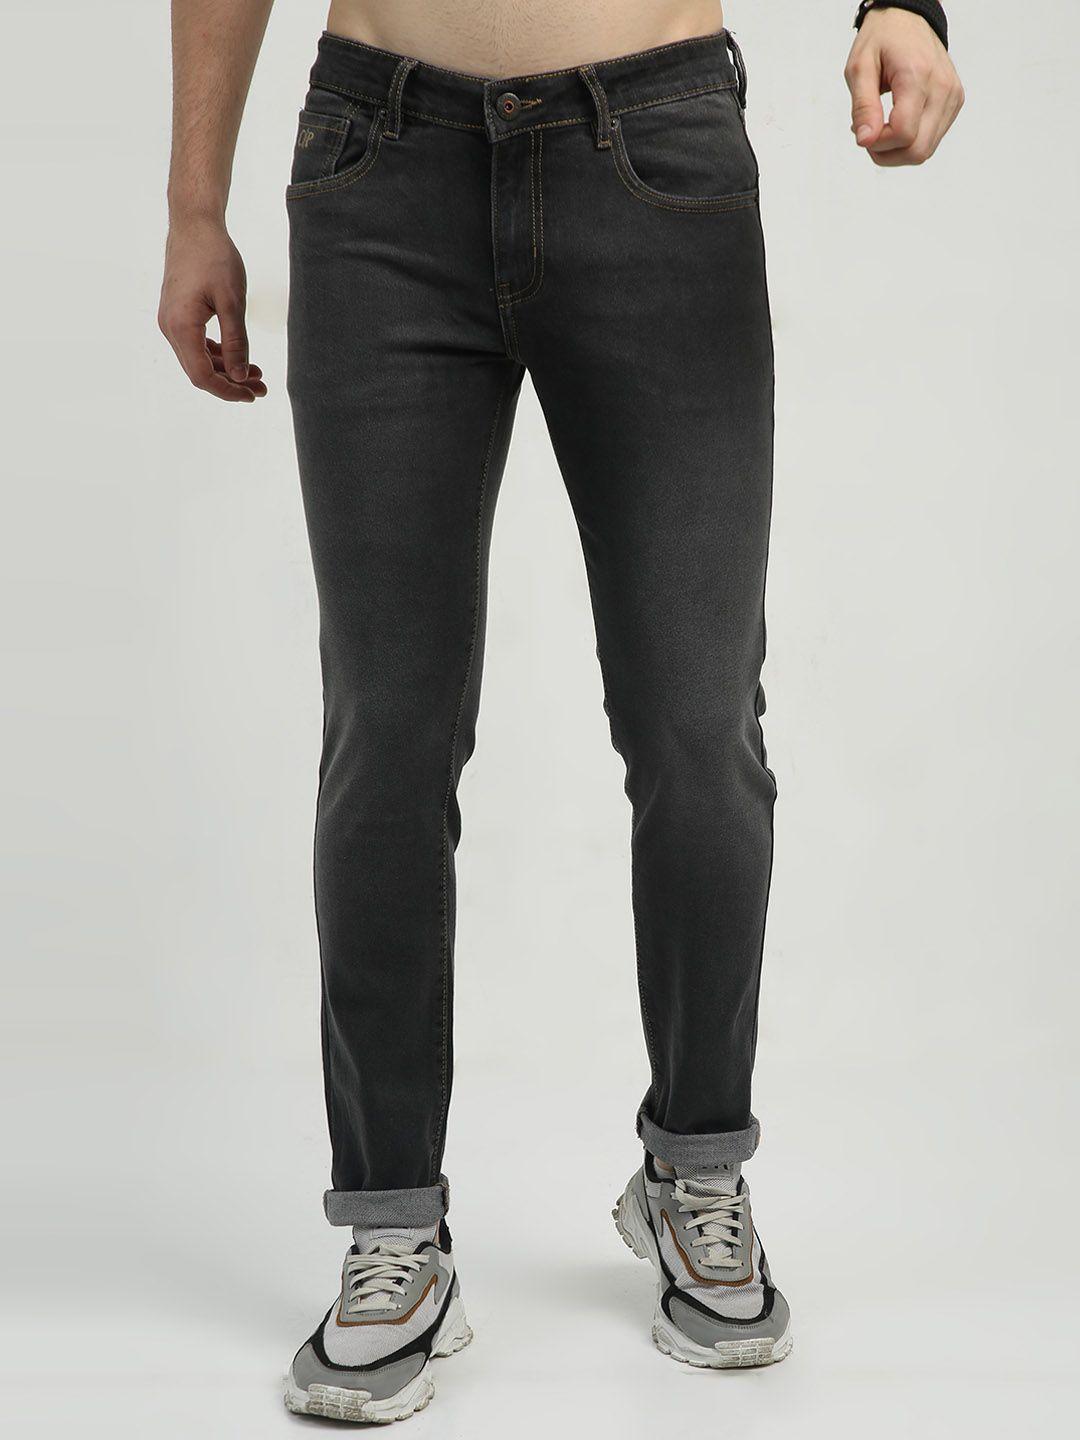 classic-polo-men-jean-slim-fit-cotton-denim-mid-rise-jeans